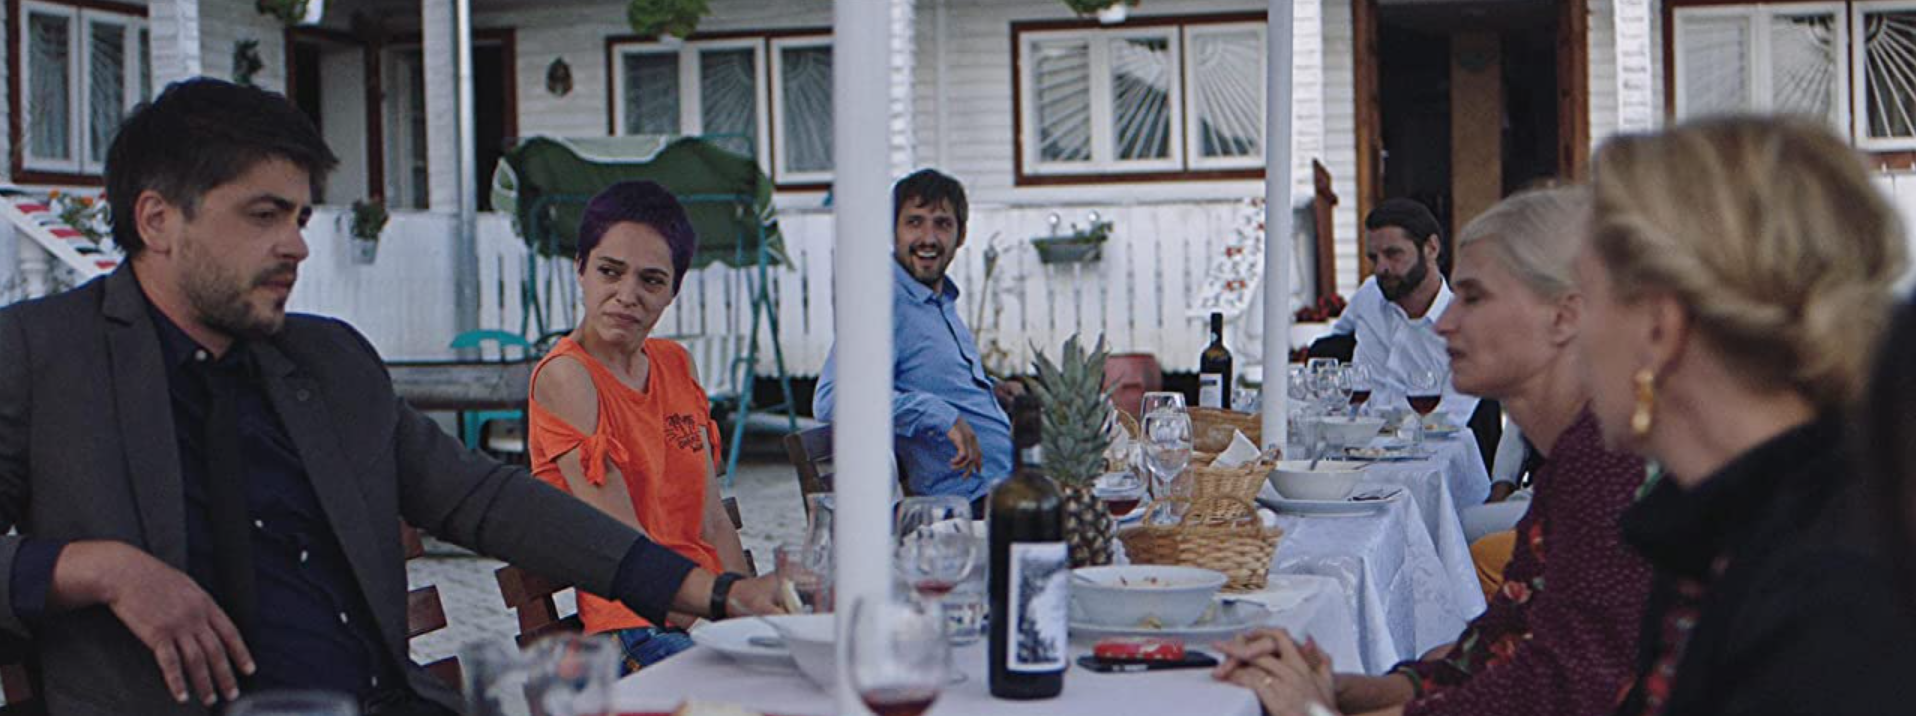 Cena do filme Lua Azul mostra uma família fazendo uma refeição em volta de uma mesa branca e farta.